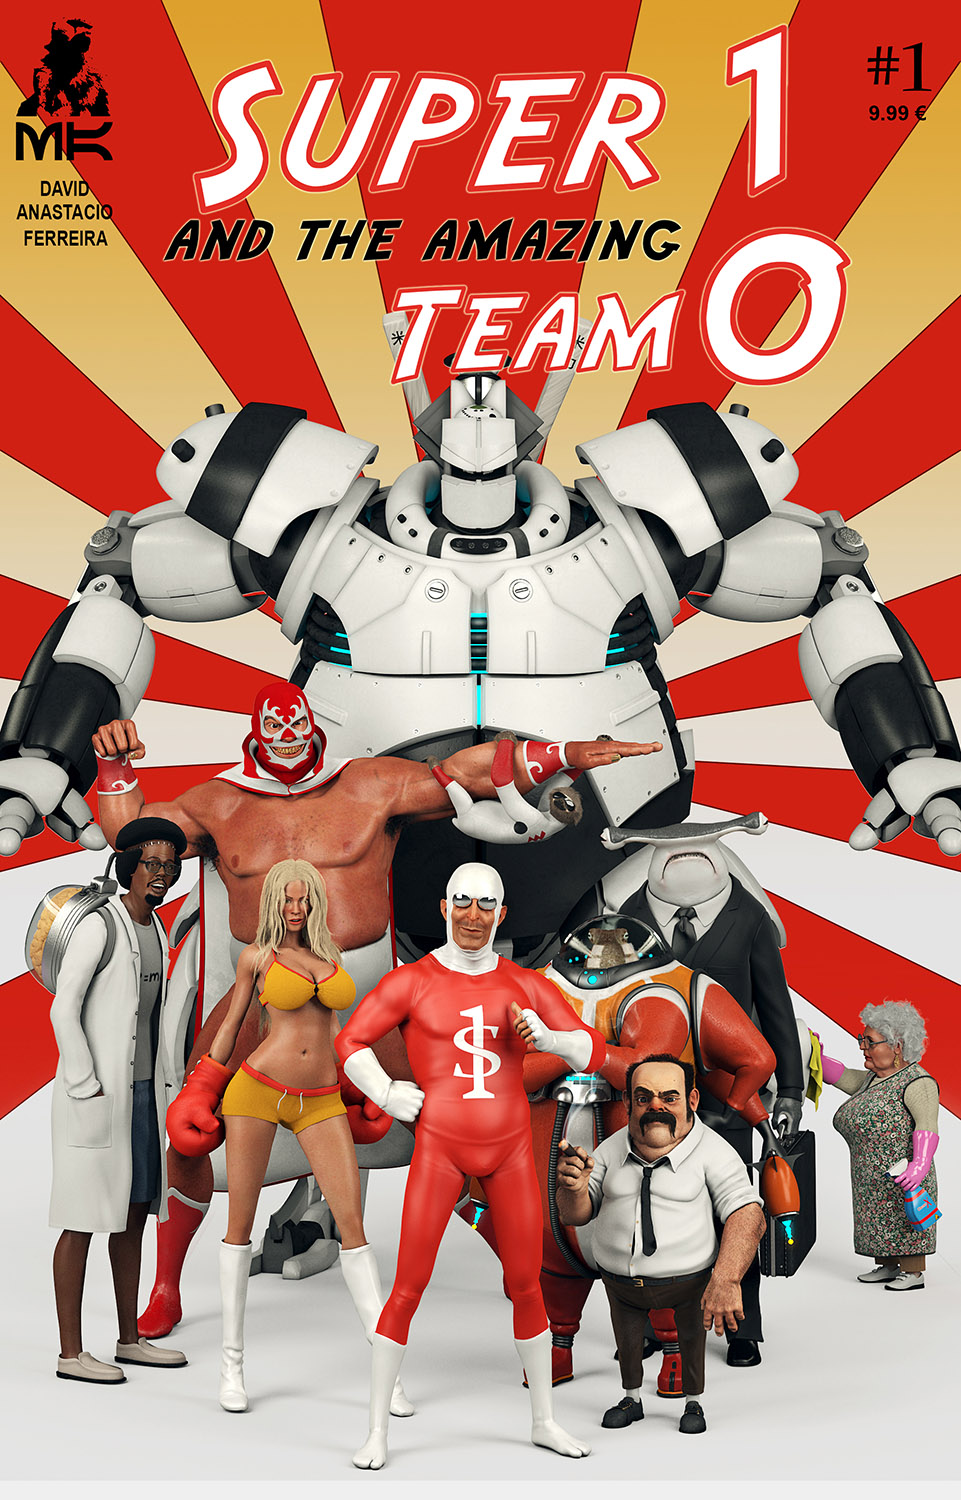 Super_One_and_Team_Zero_B1500.jpg